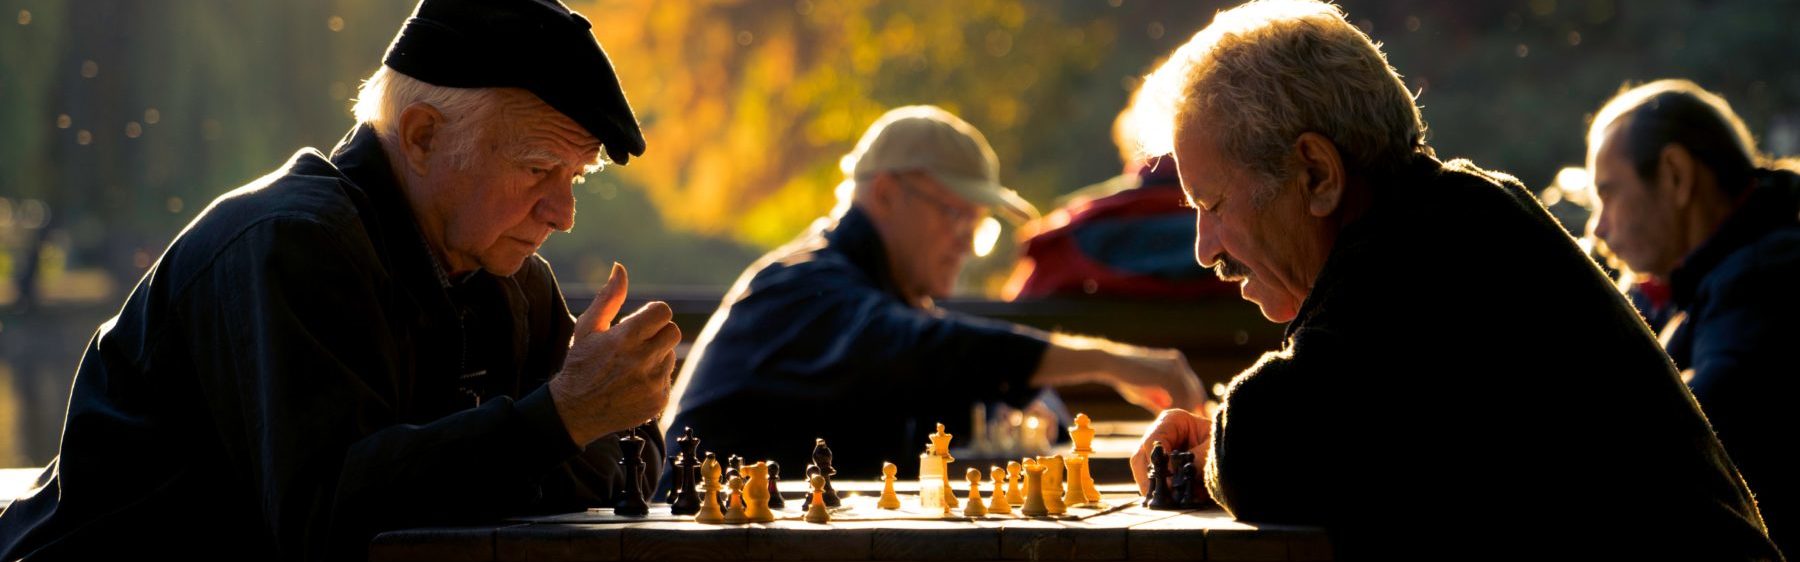 Zwei Schach spielende Männer im Spätsommer